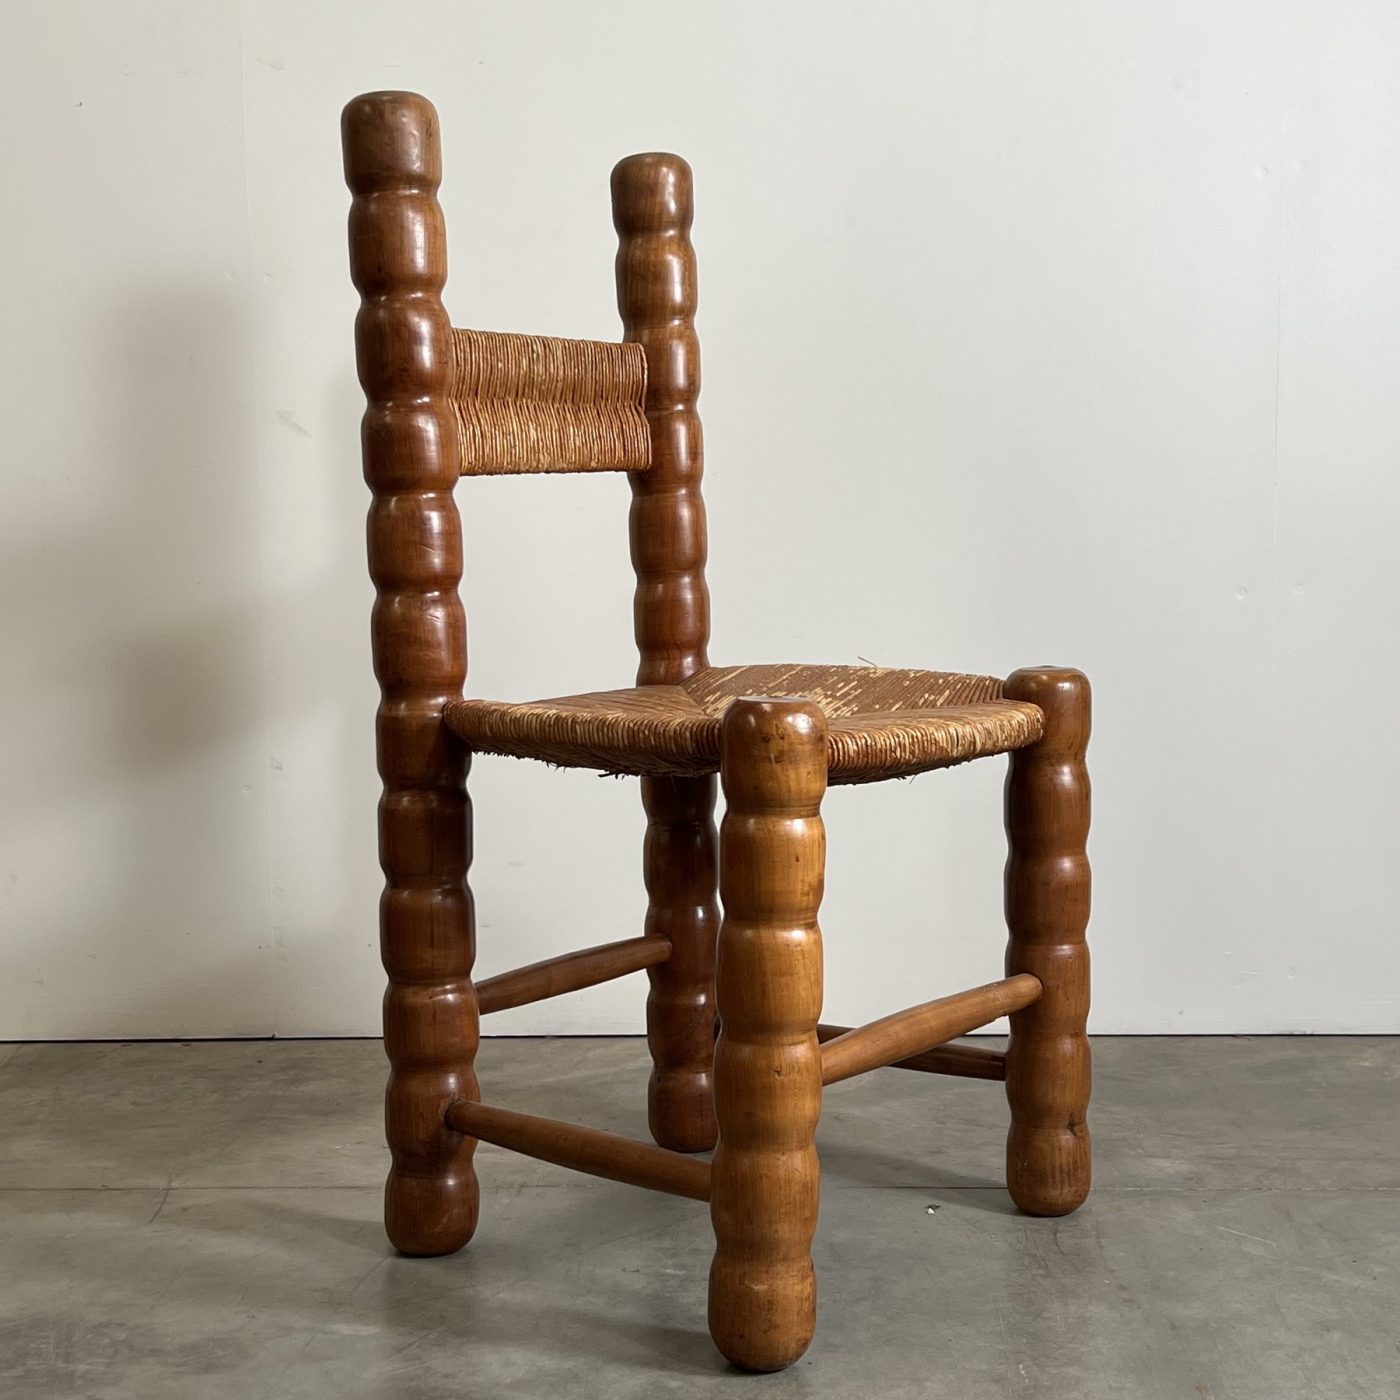 objet-vagabond-massive-chairs0016